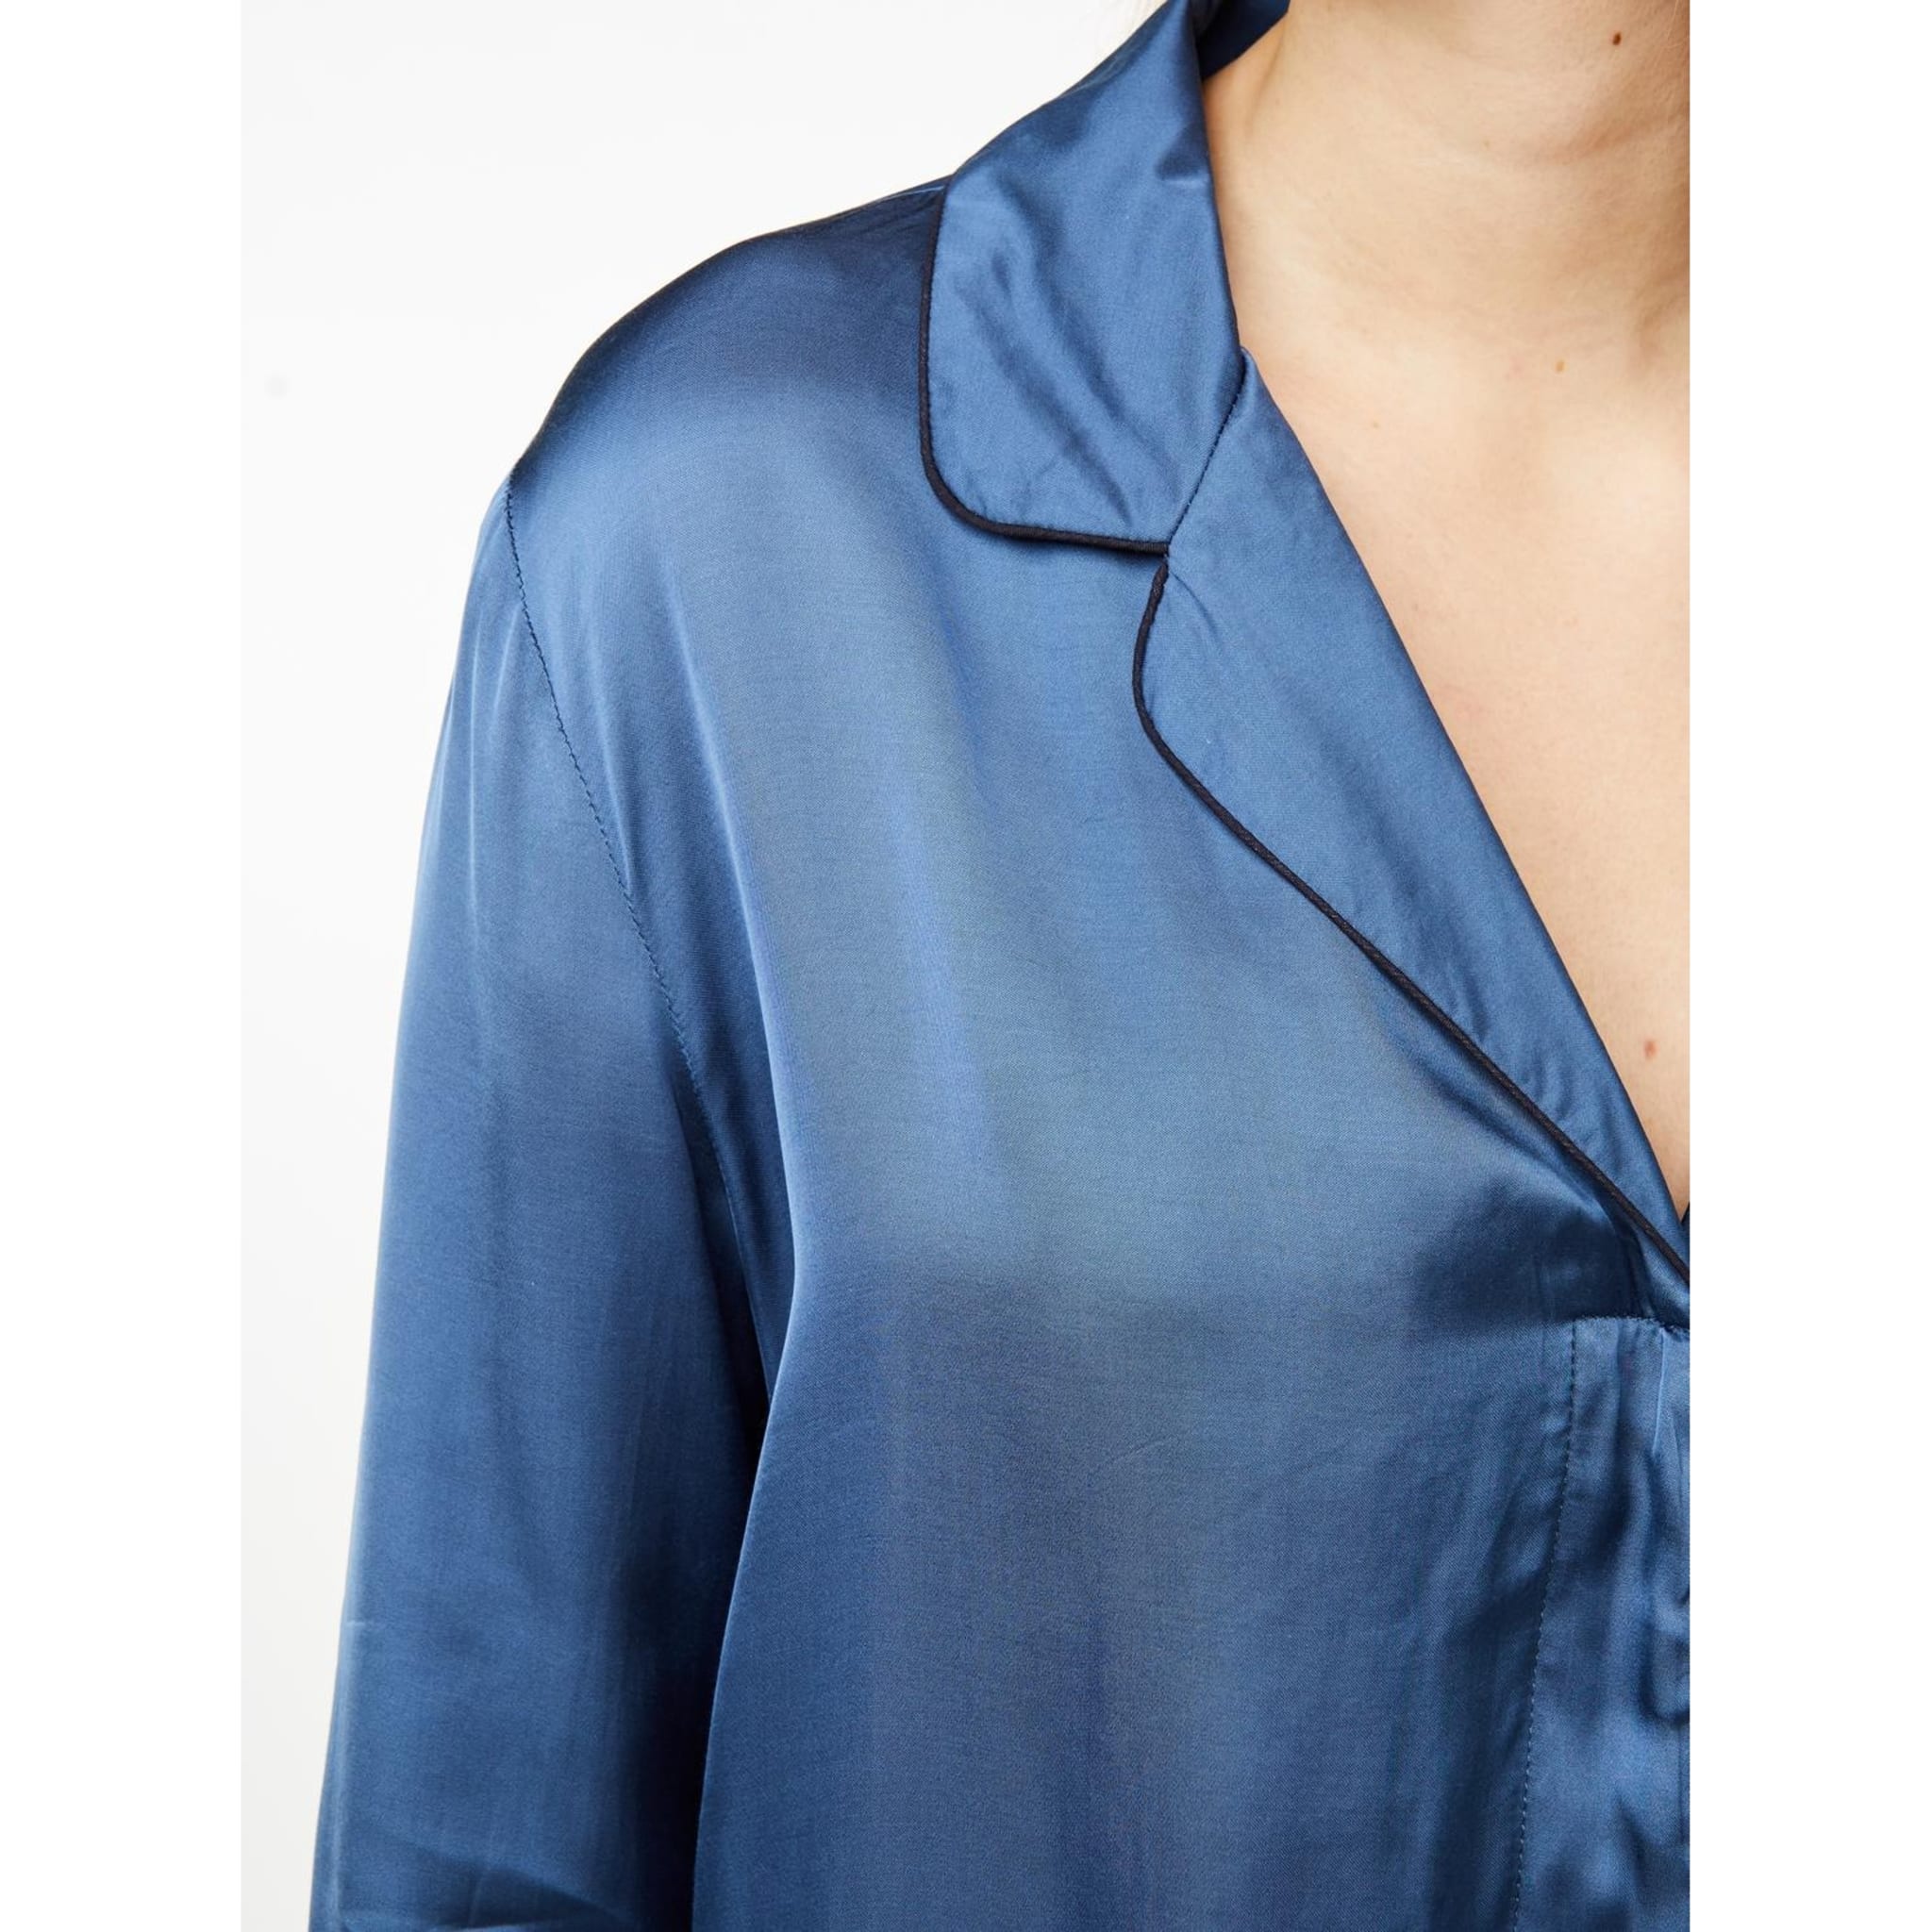 Josephine Pajamas Shirt, ensign blue